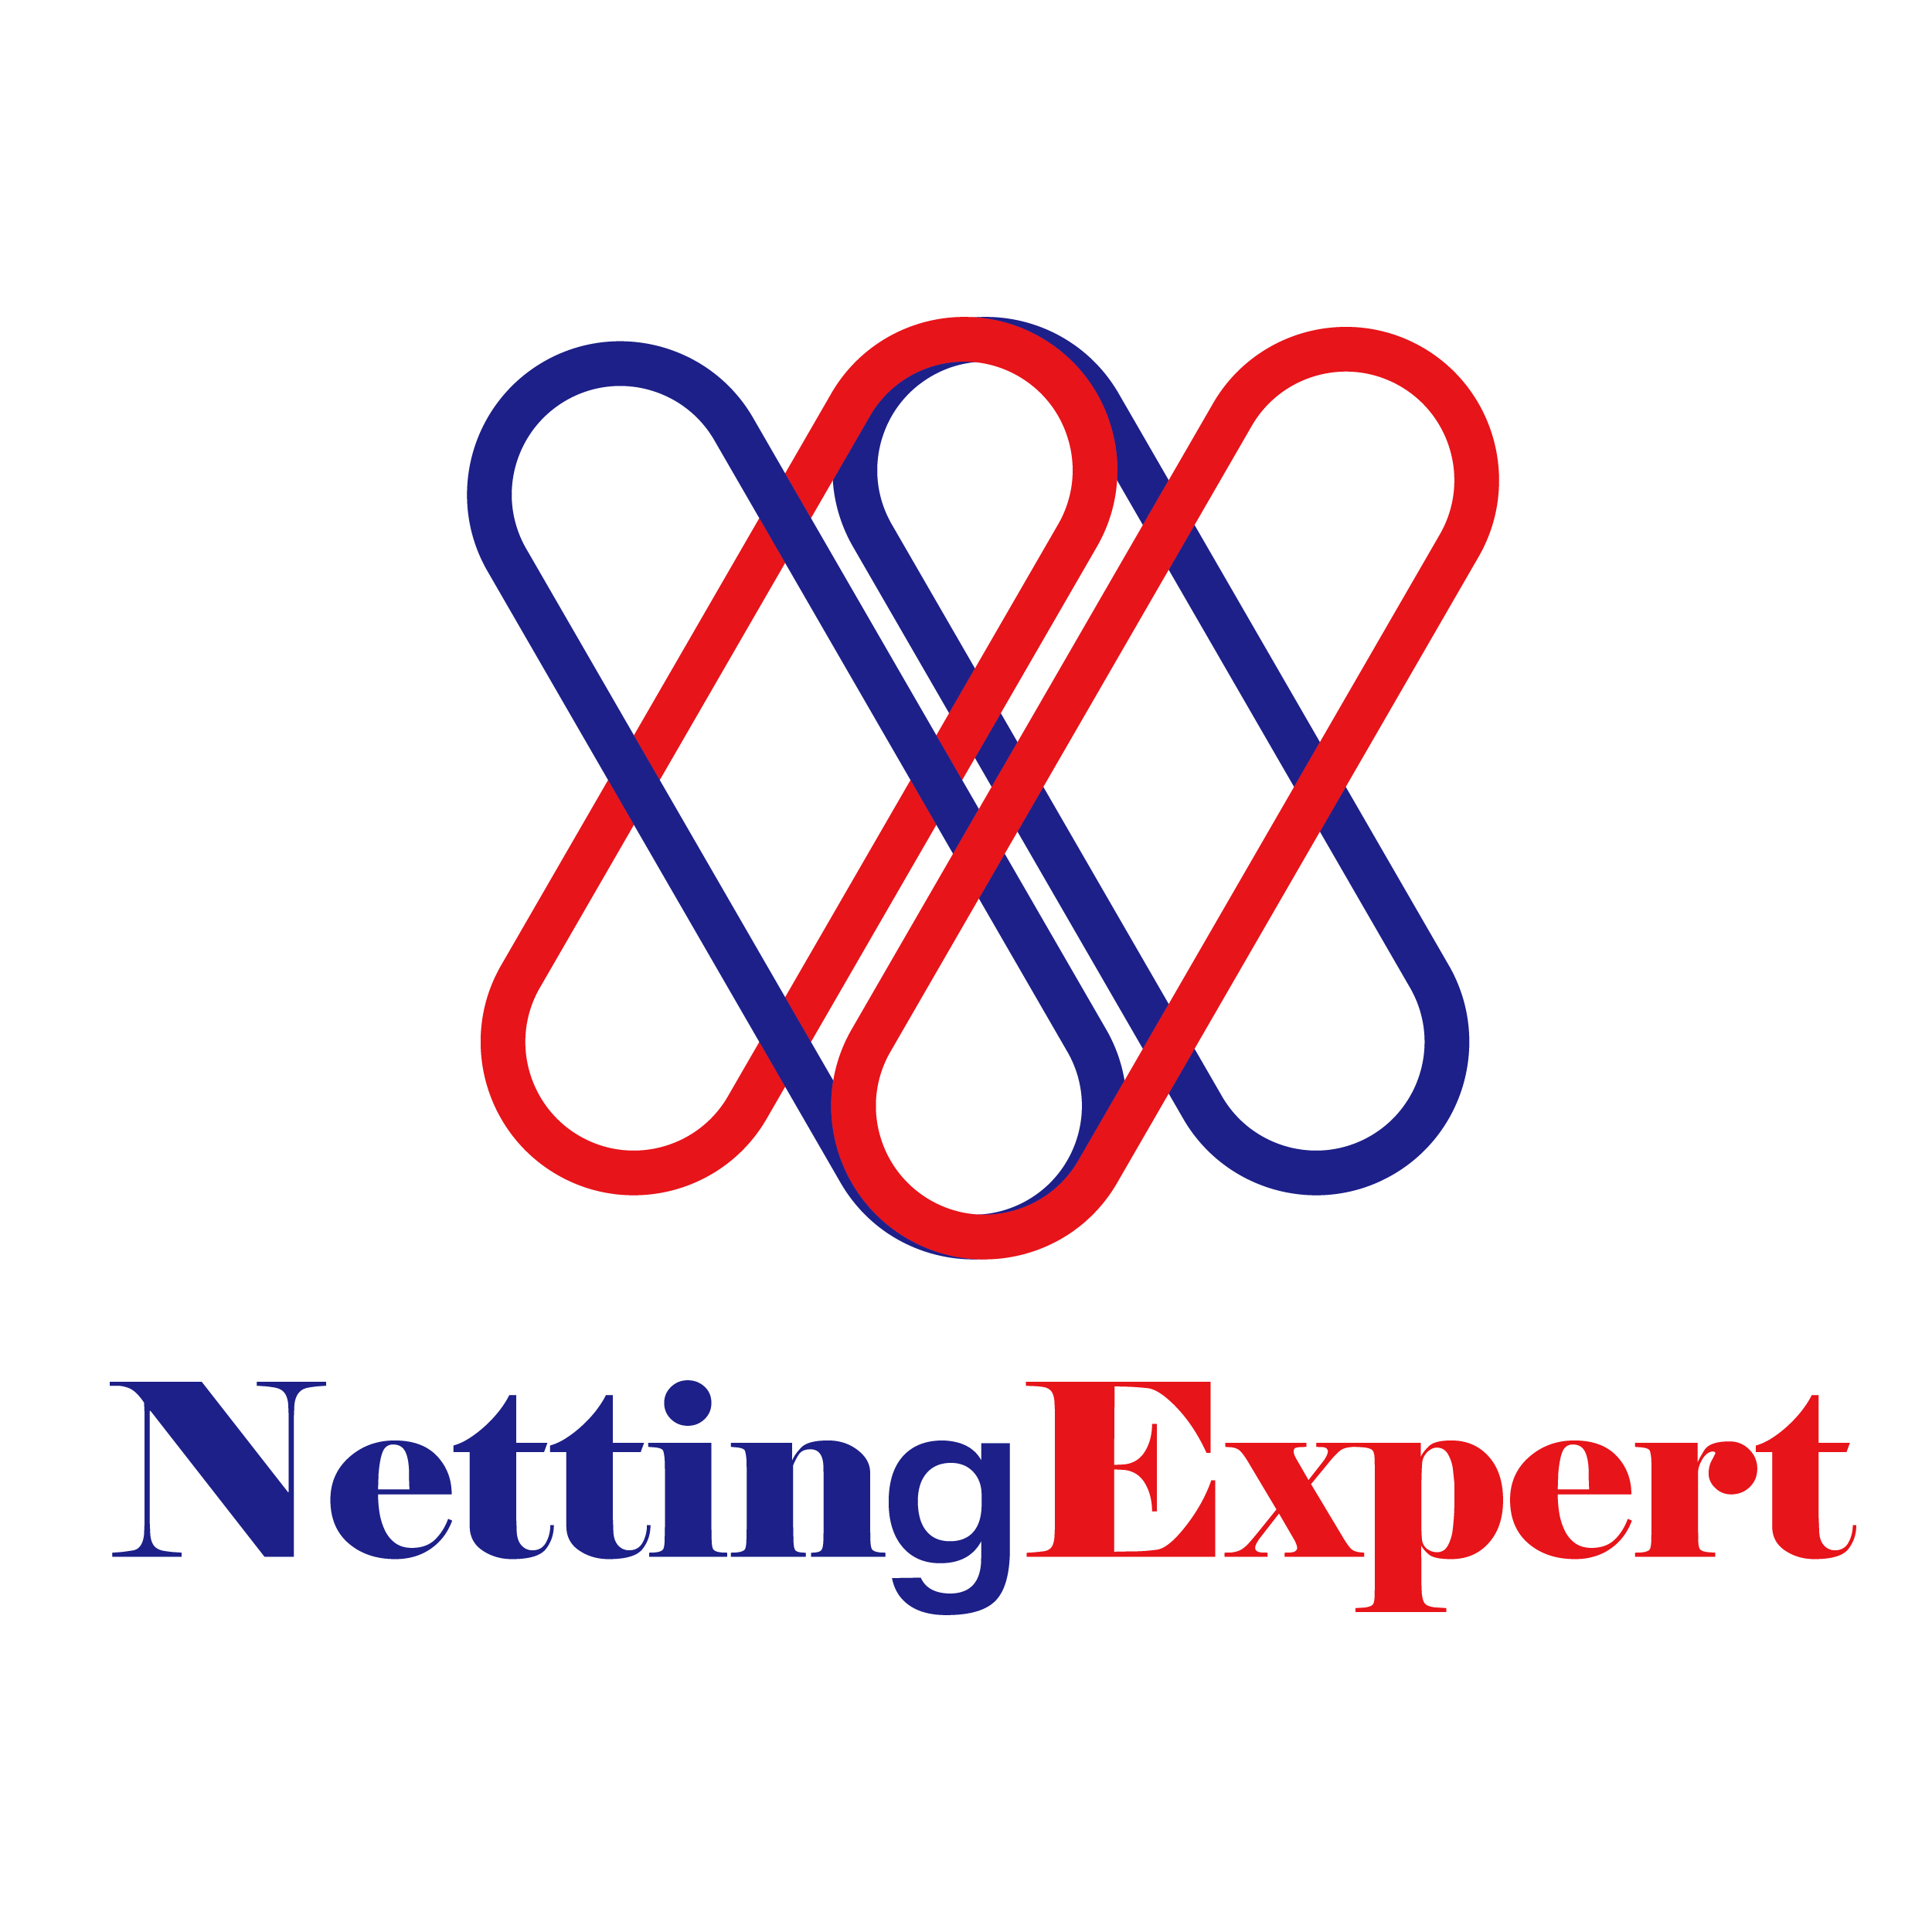 NettingExpert